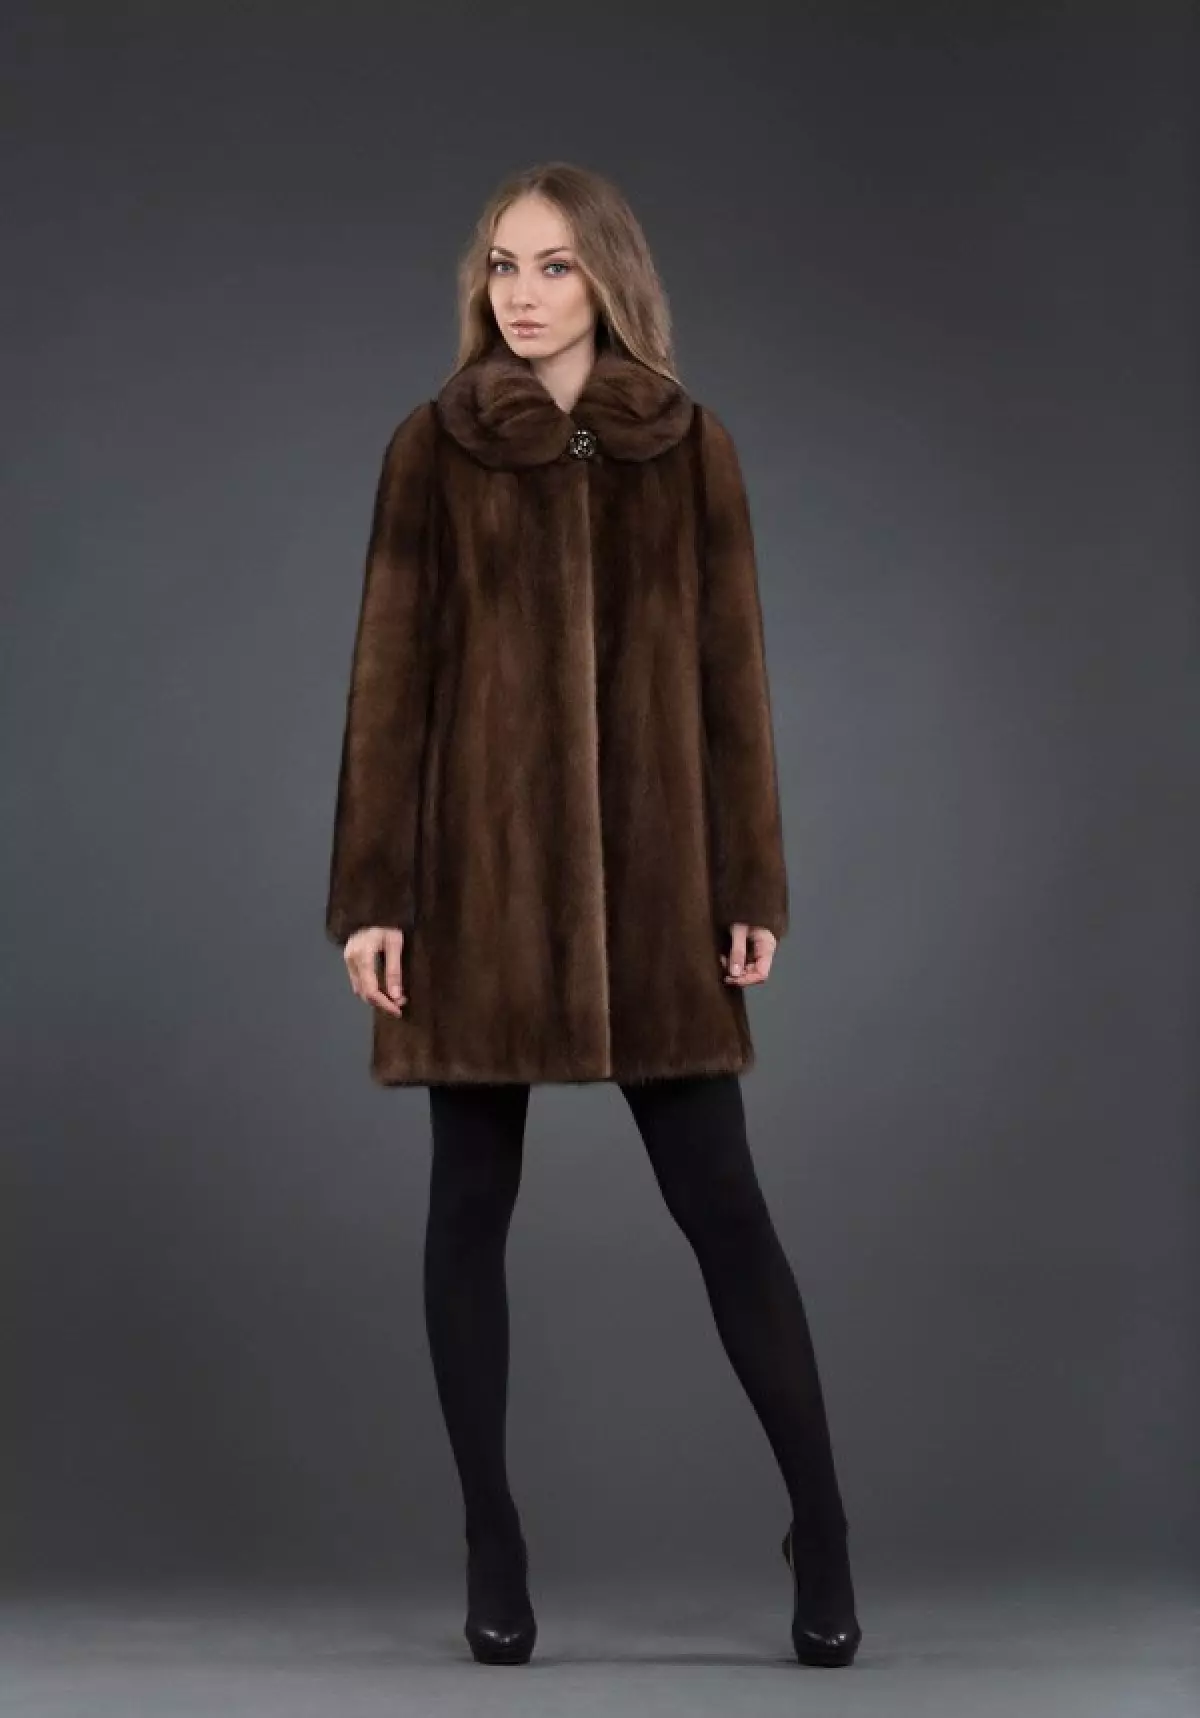 Fur coat mula sa mink pieces (70 mga larawan): Mga Review tungkol sa mink coat pieces habang nagkakahalaga ito 14423_21